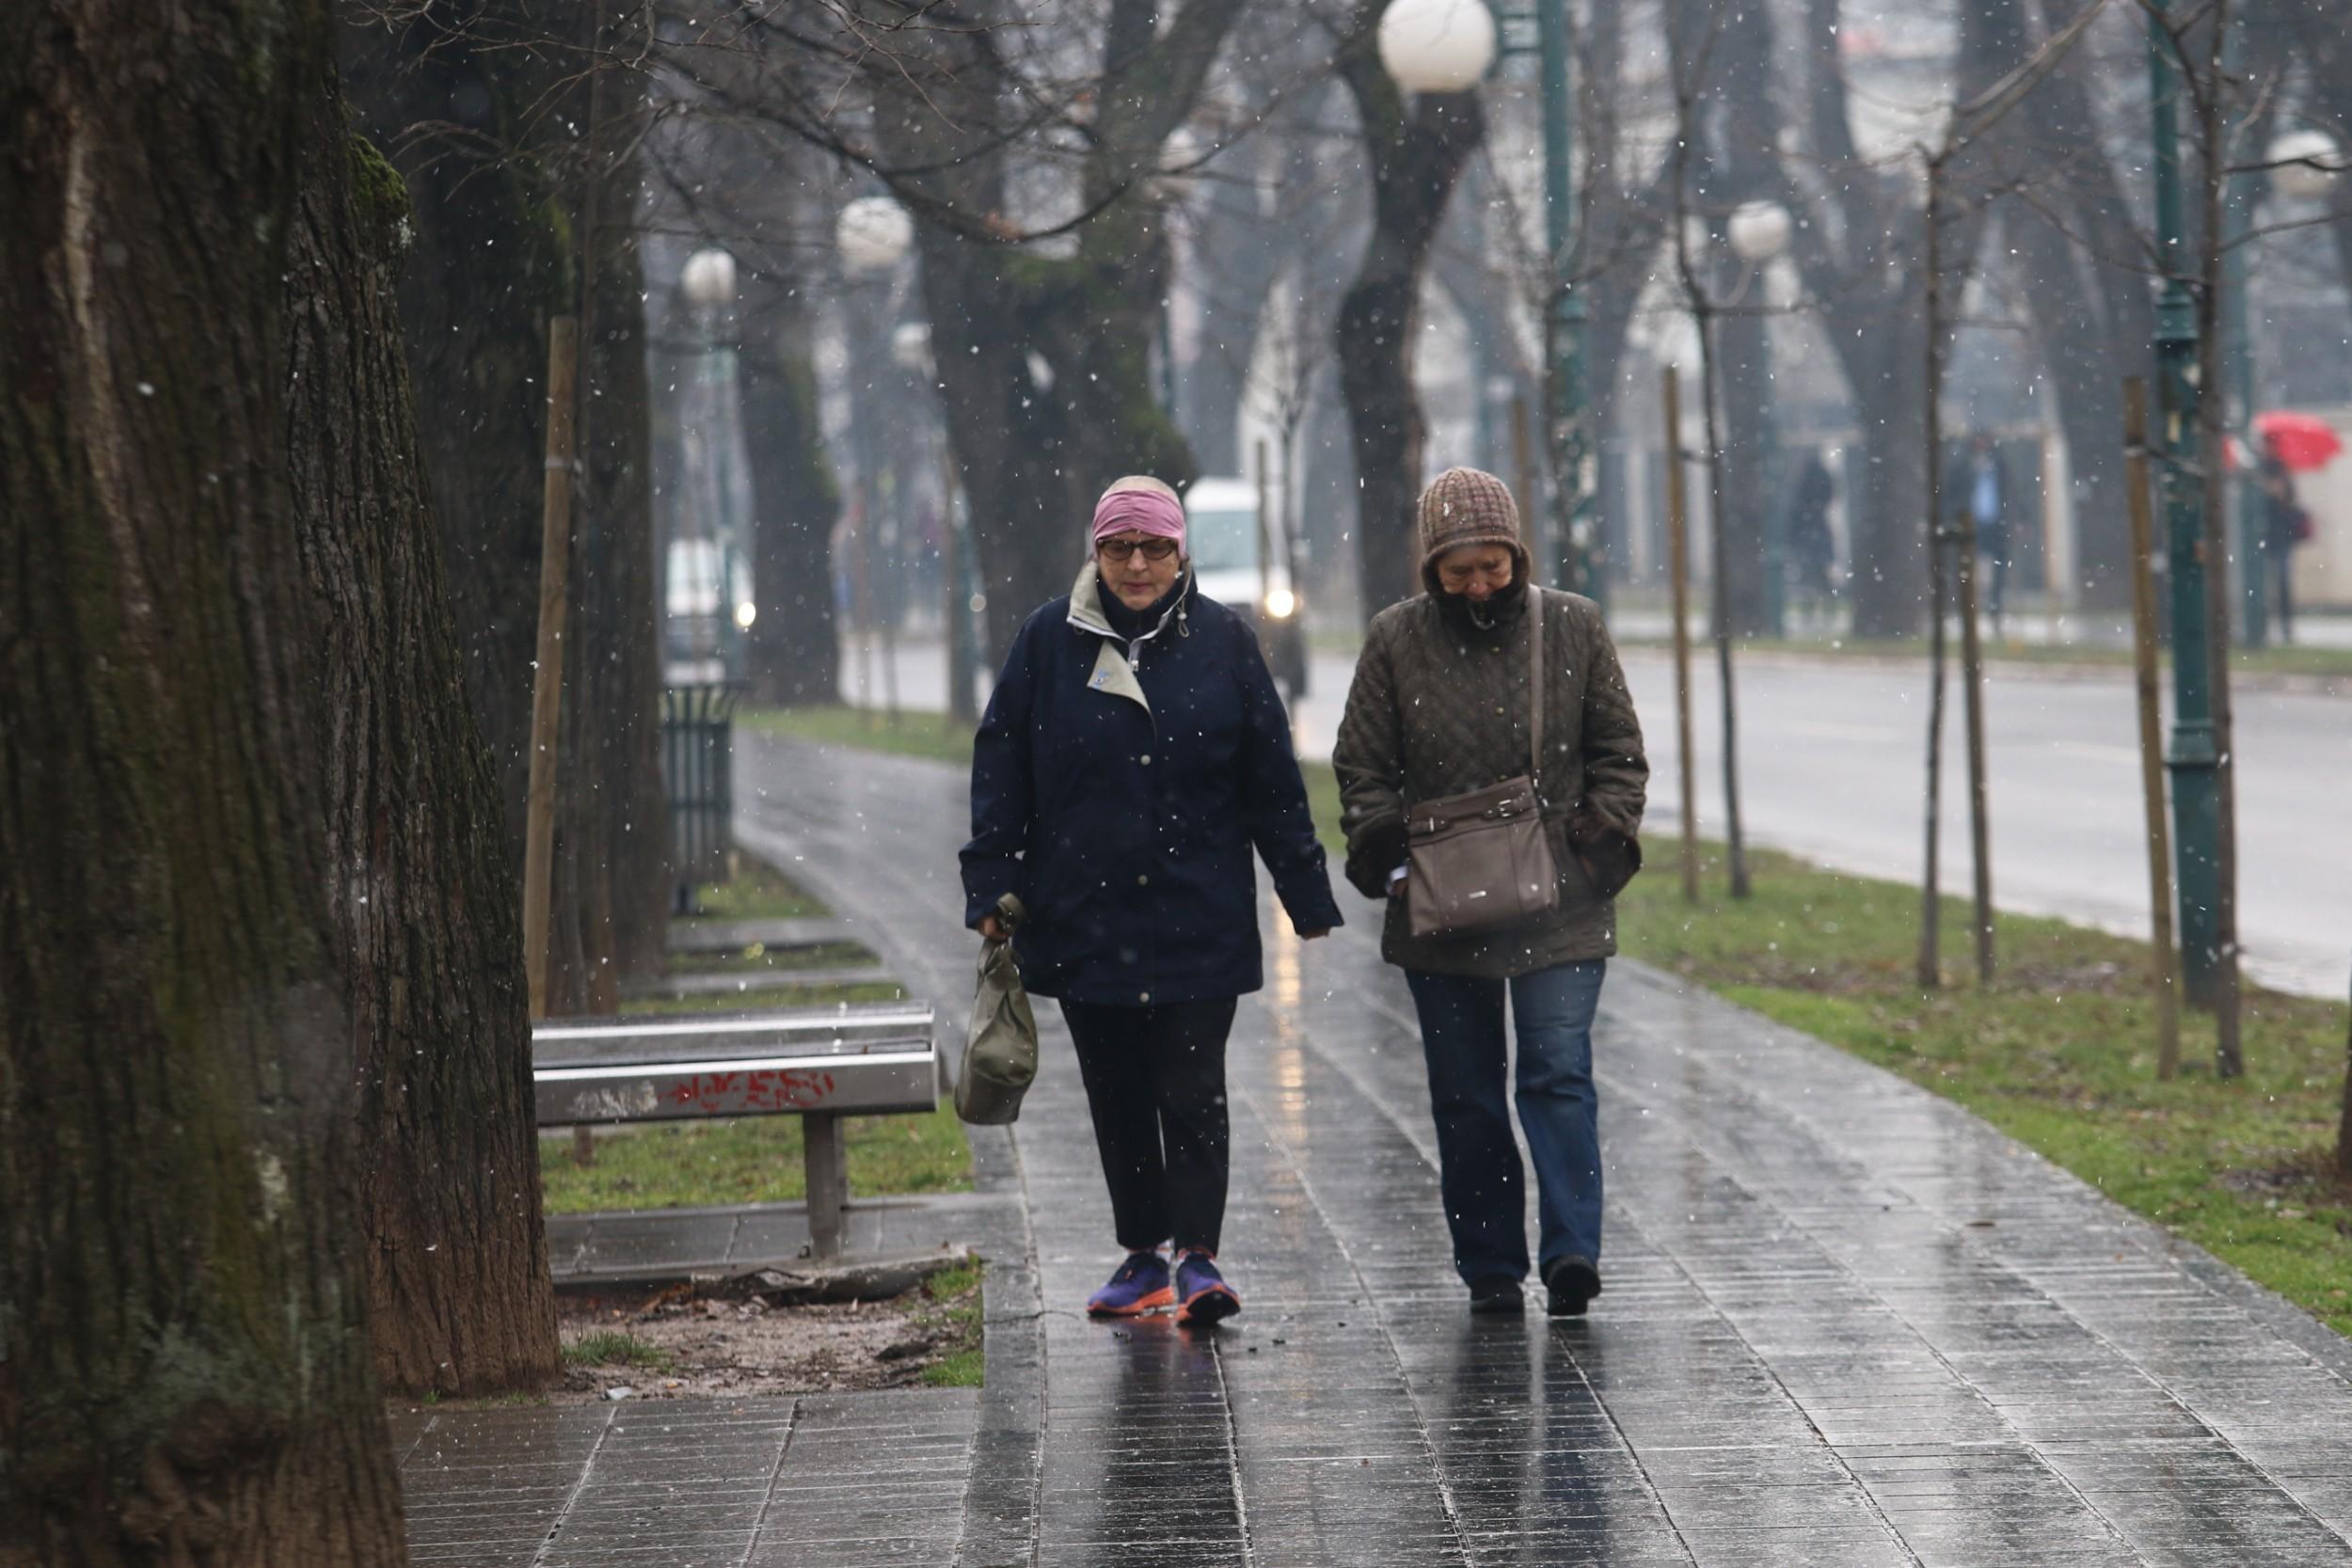 Fotoreporter portala Avaz.ba na ulicama Sarajeva: Građani uživali u romantičnoj šetnji